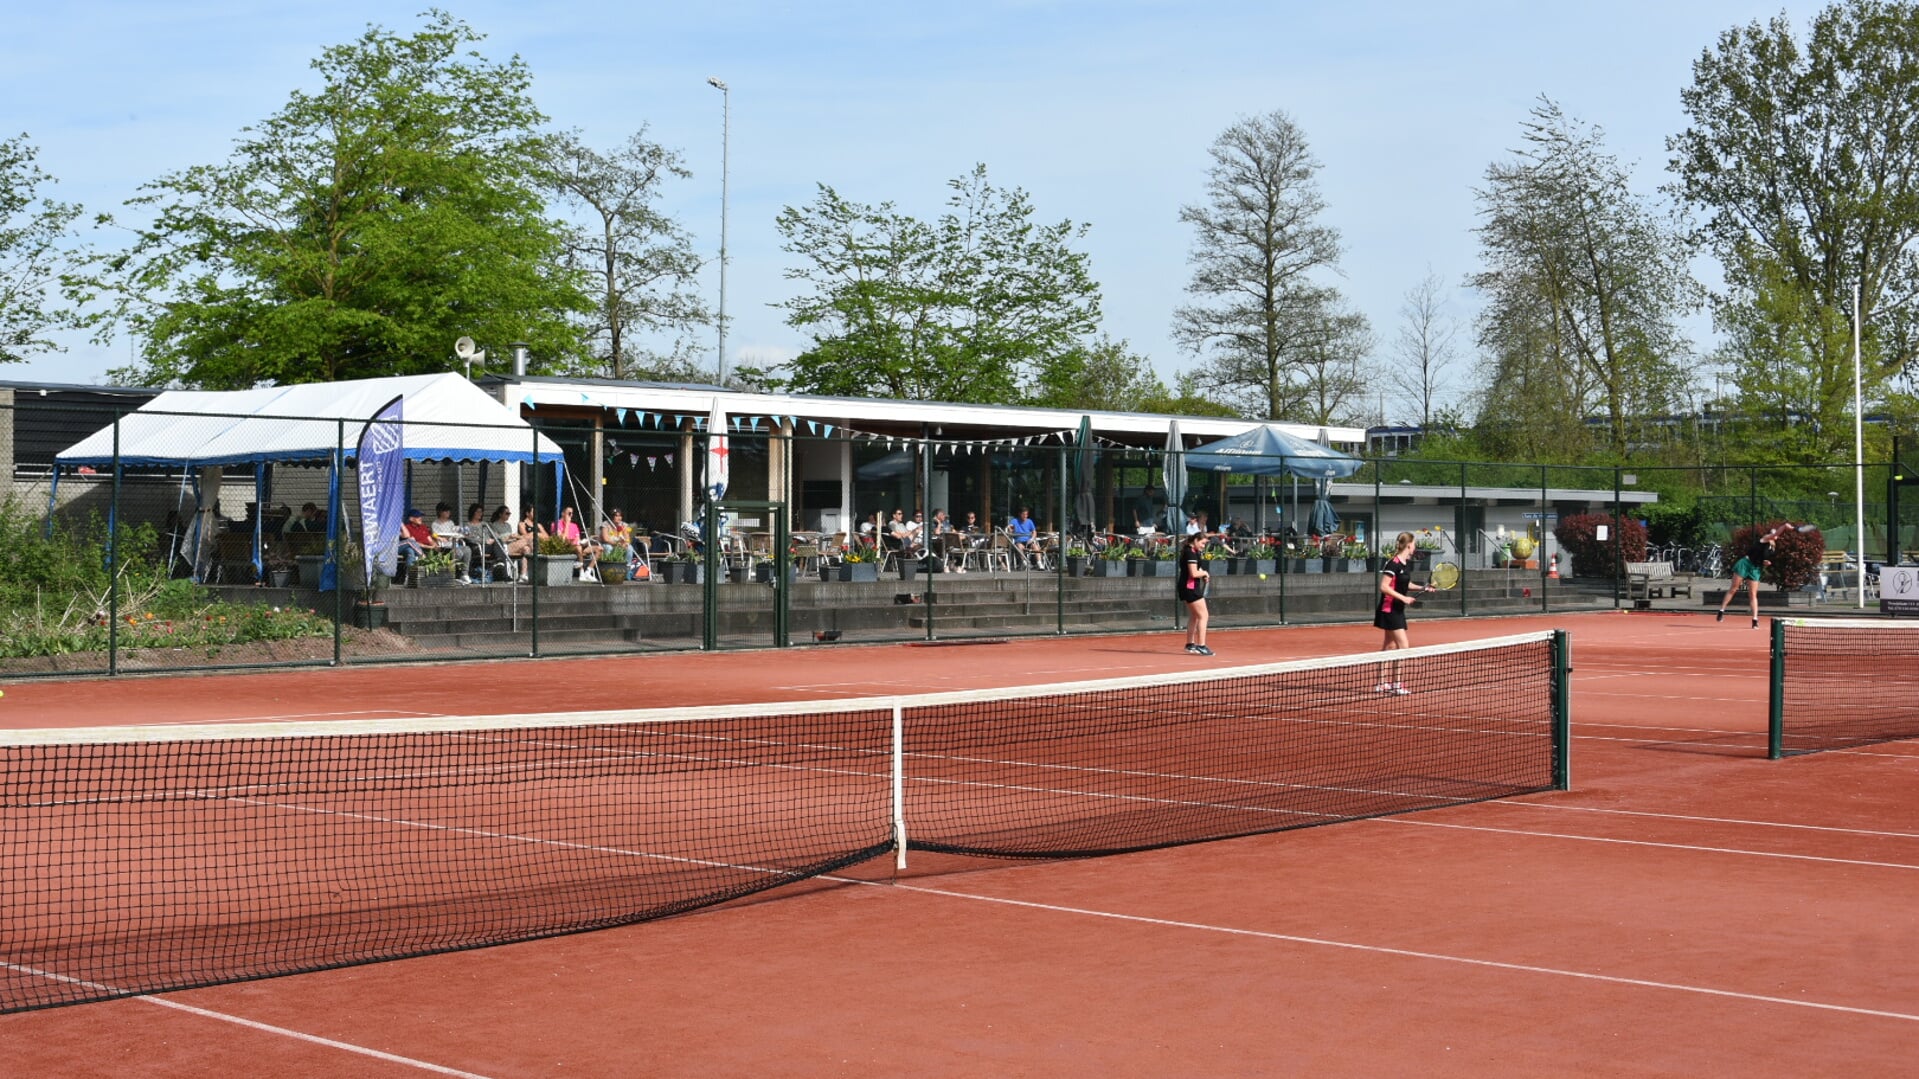 Op 28 april is het vol met spelletjes en clinics om kennis te maken met tennis en padel. Foto: pr